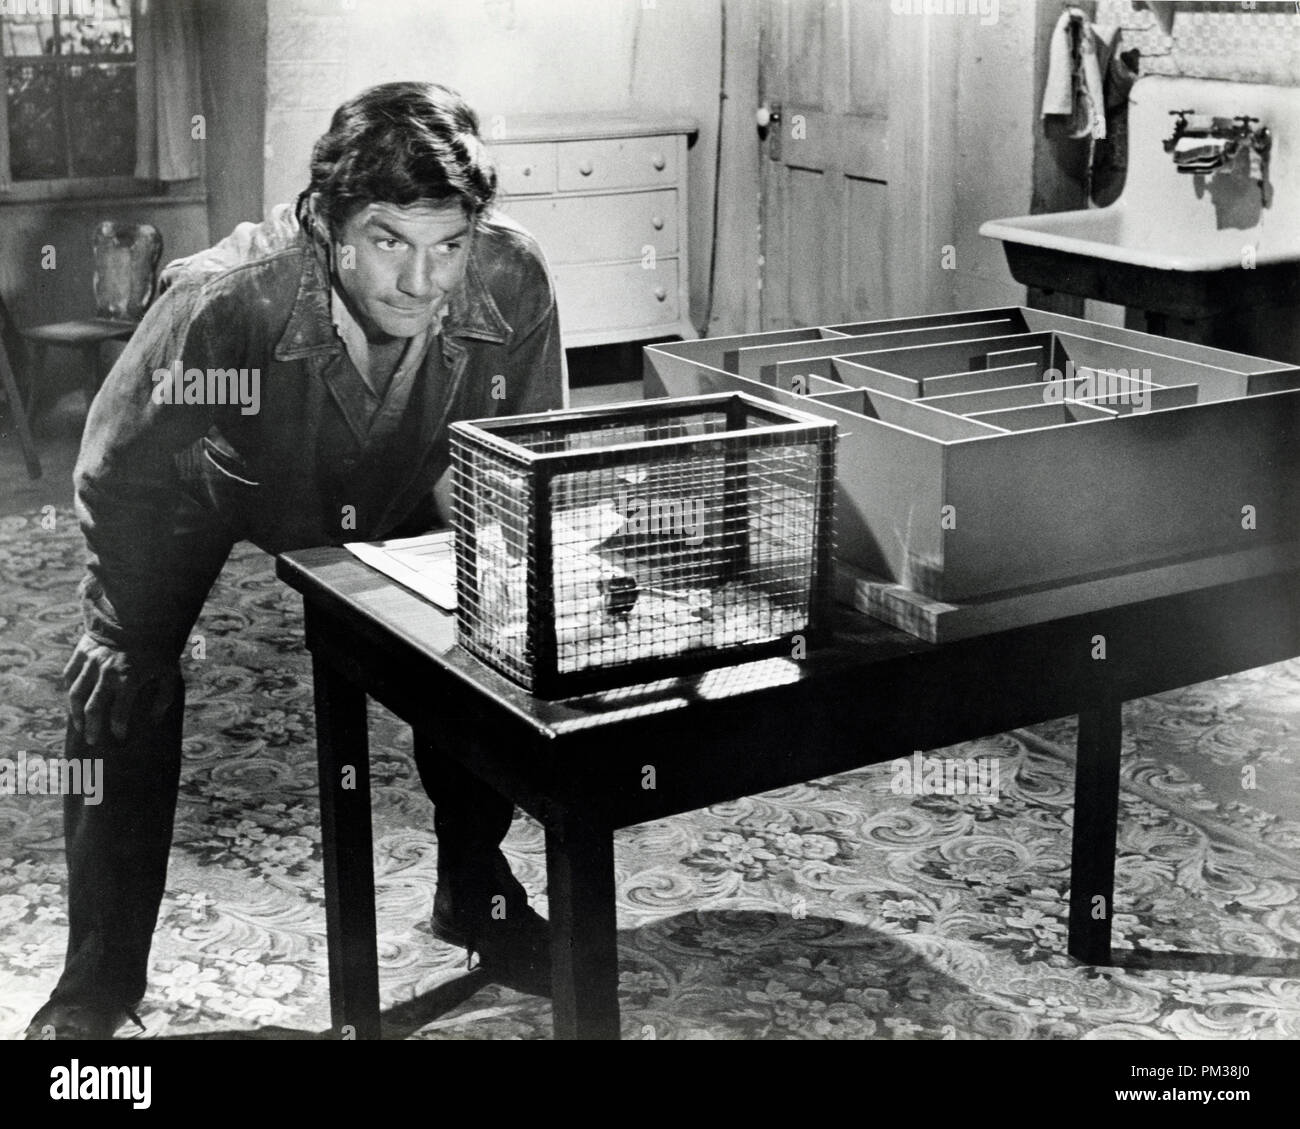 Cliff Robertson in "Charly" 1968 Riferimento File # 1211 003THA © CCR /Hollywood Archivio - Tutti i diritti riservati Foto Stock